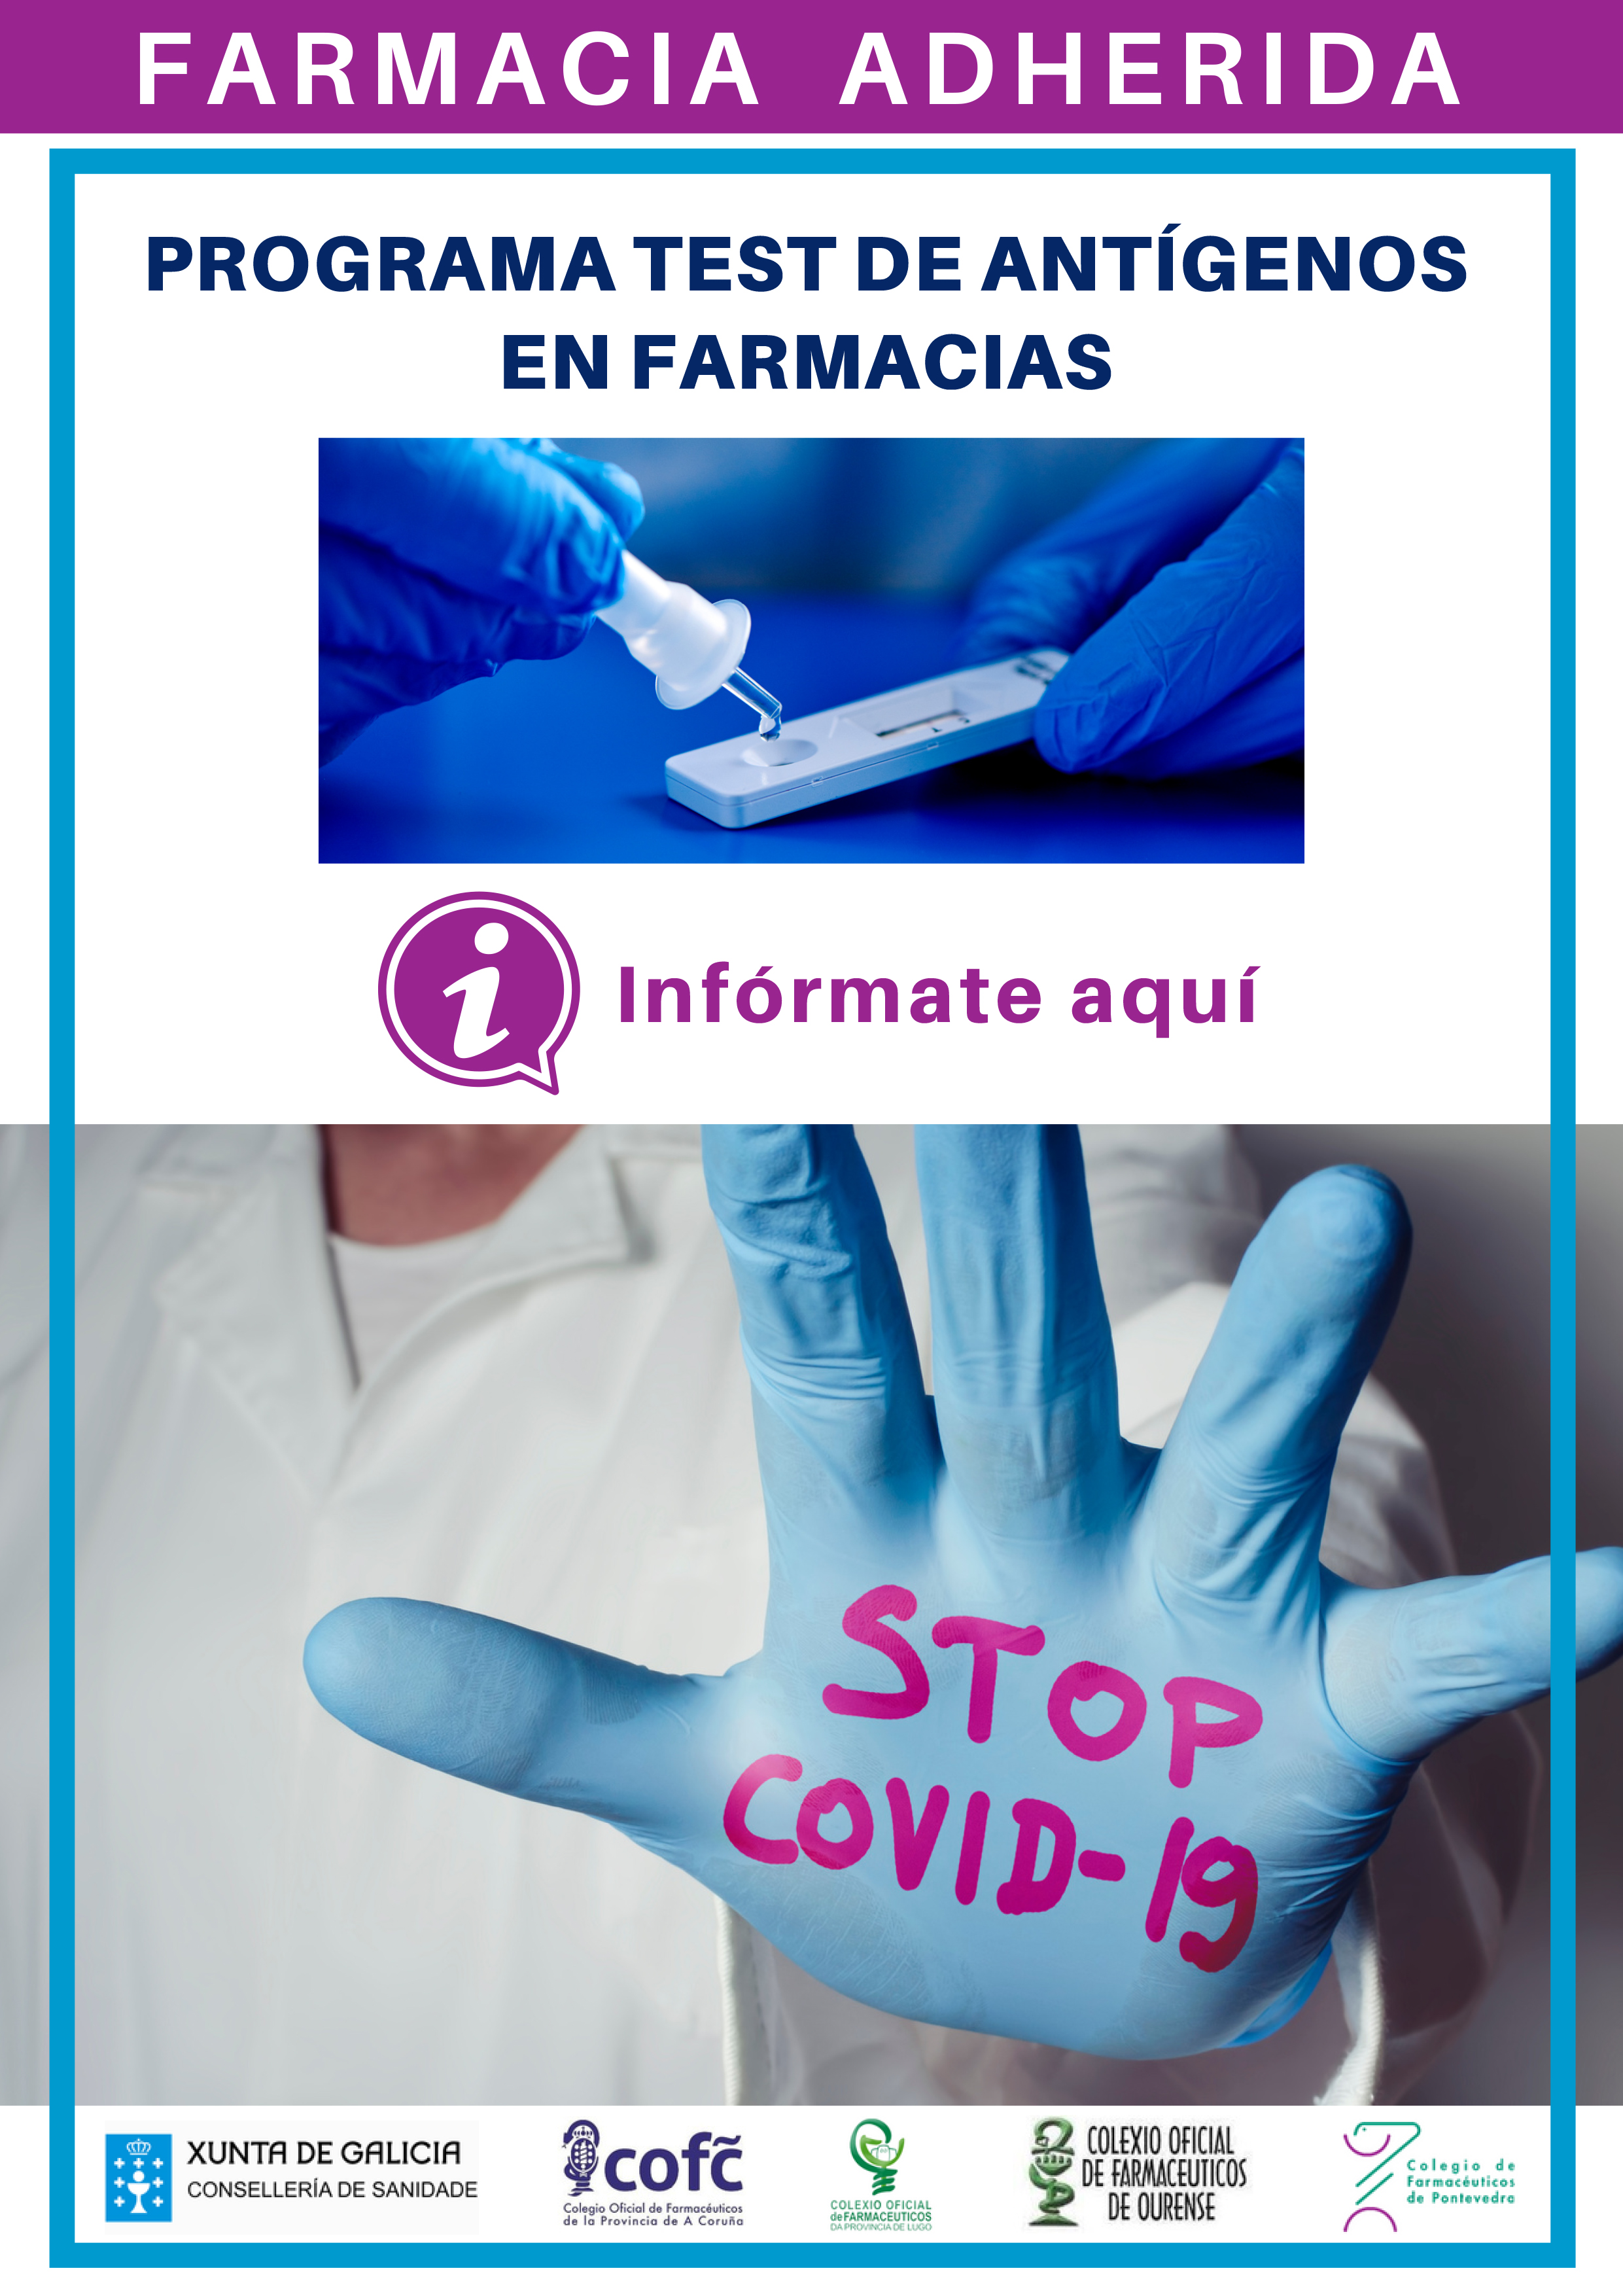 Los farmacéuticos procesan test de autodiagnóstico COVID-19 y comunican el resultado - Colegio de Farmacéuticos de Pontevedra